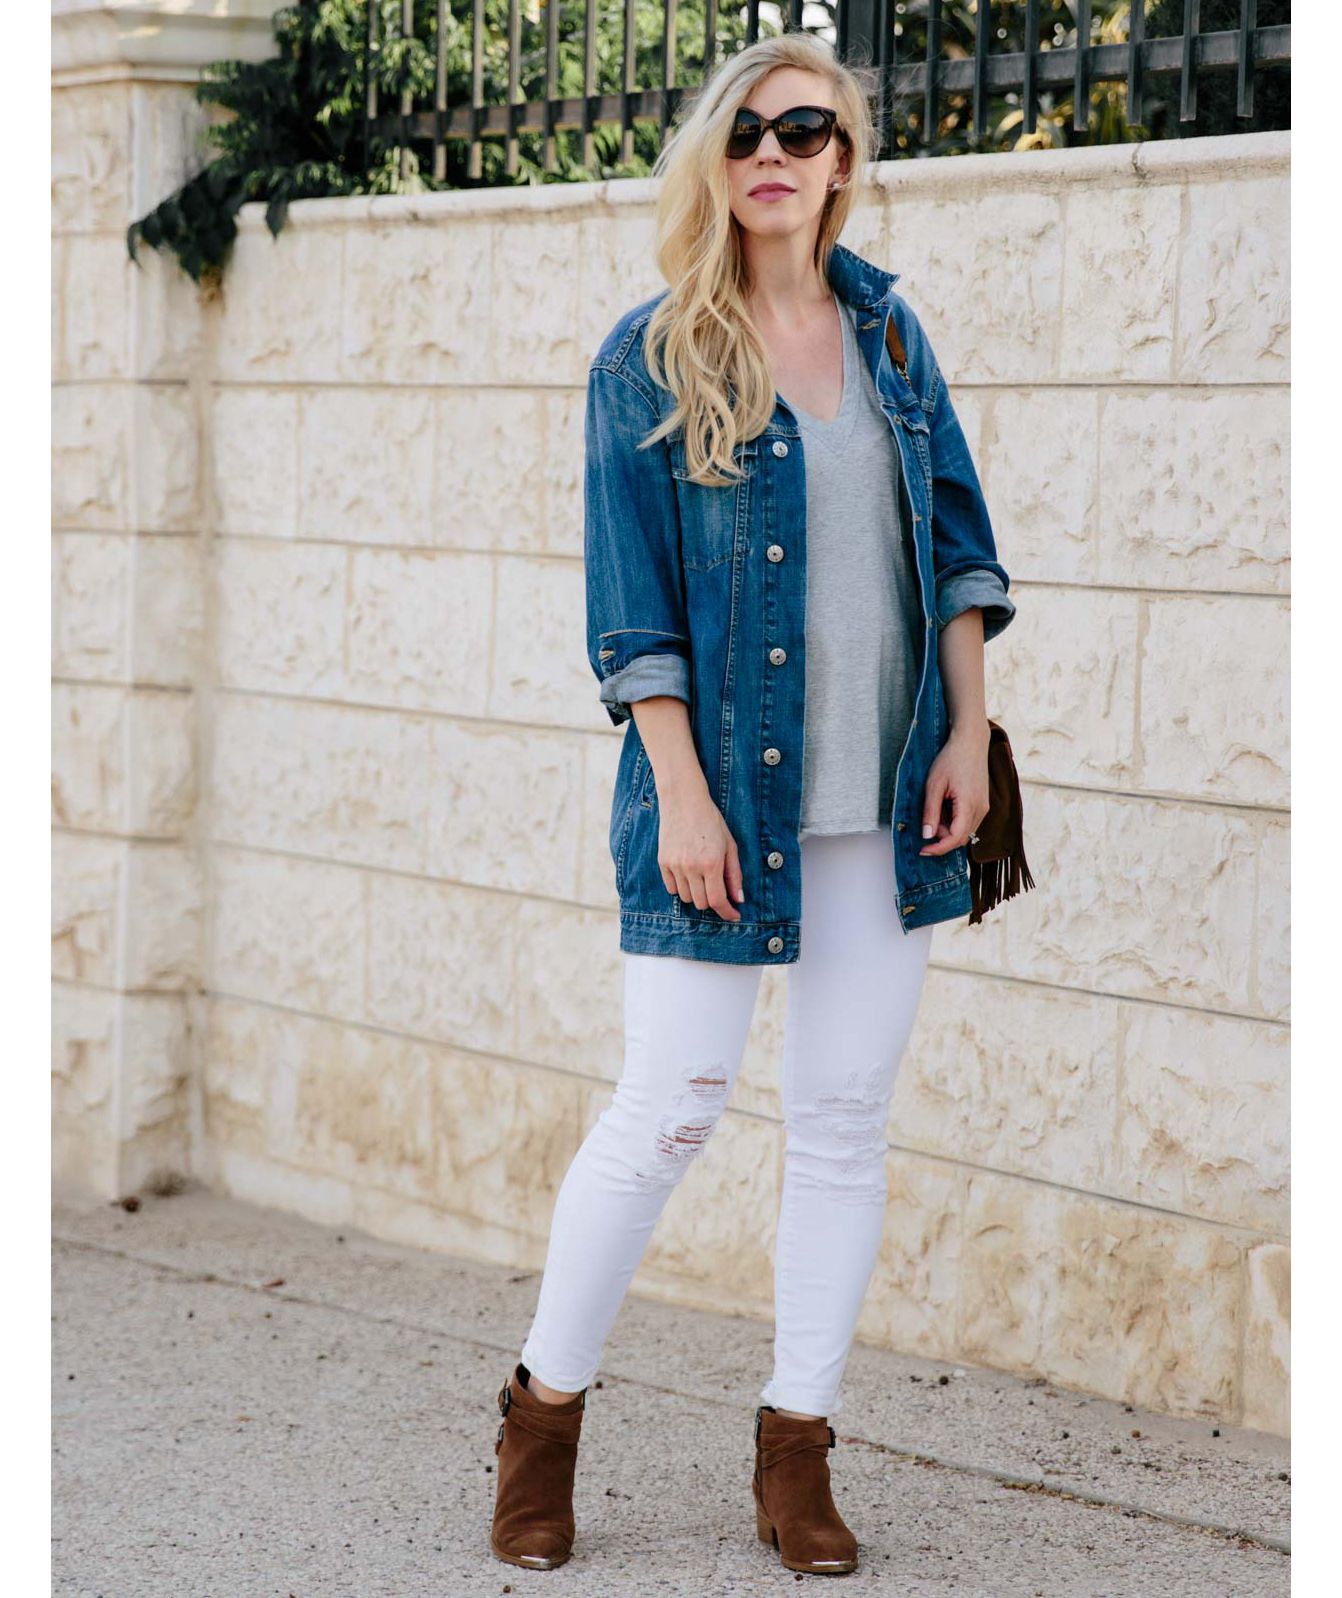 Kvinde iført overdimensioneret jeanjakke med hvide jeans